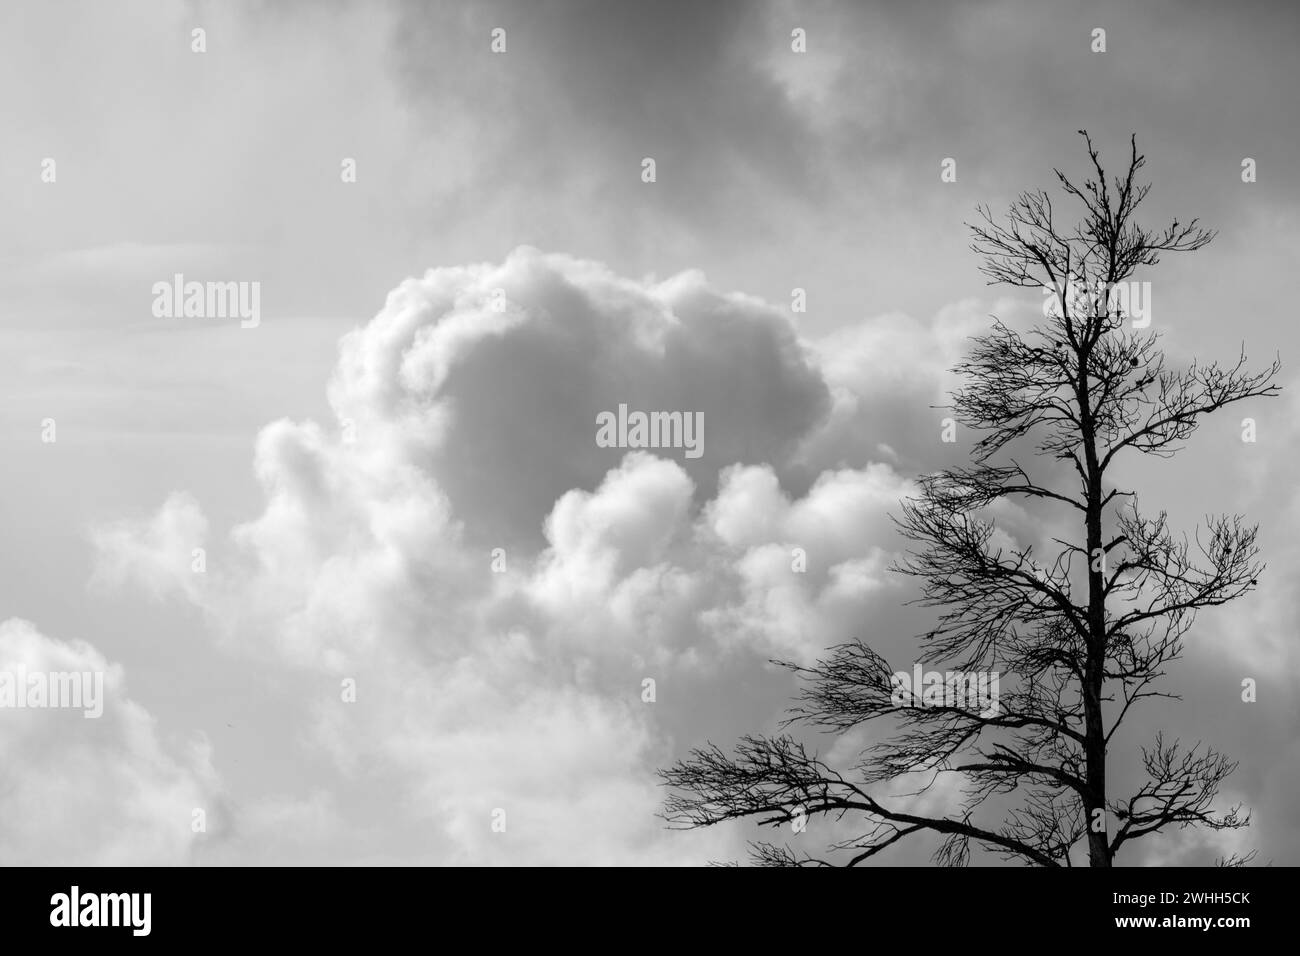 Unheilvolle schwarze und weiße dunkle Wolken am Himmel vor einem Sturm mit hölzernen Silhouetten im Vordergrund Stockfoto